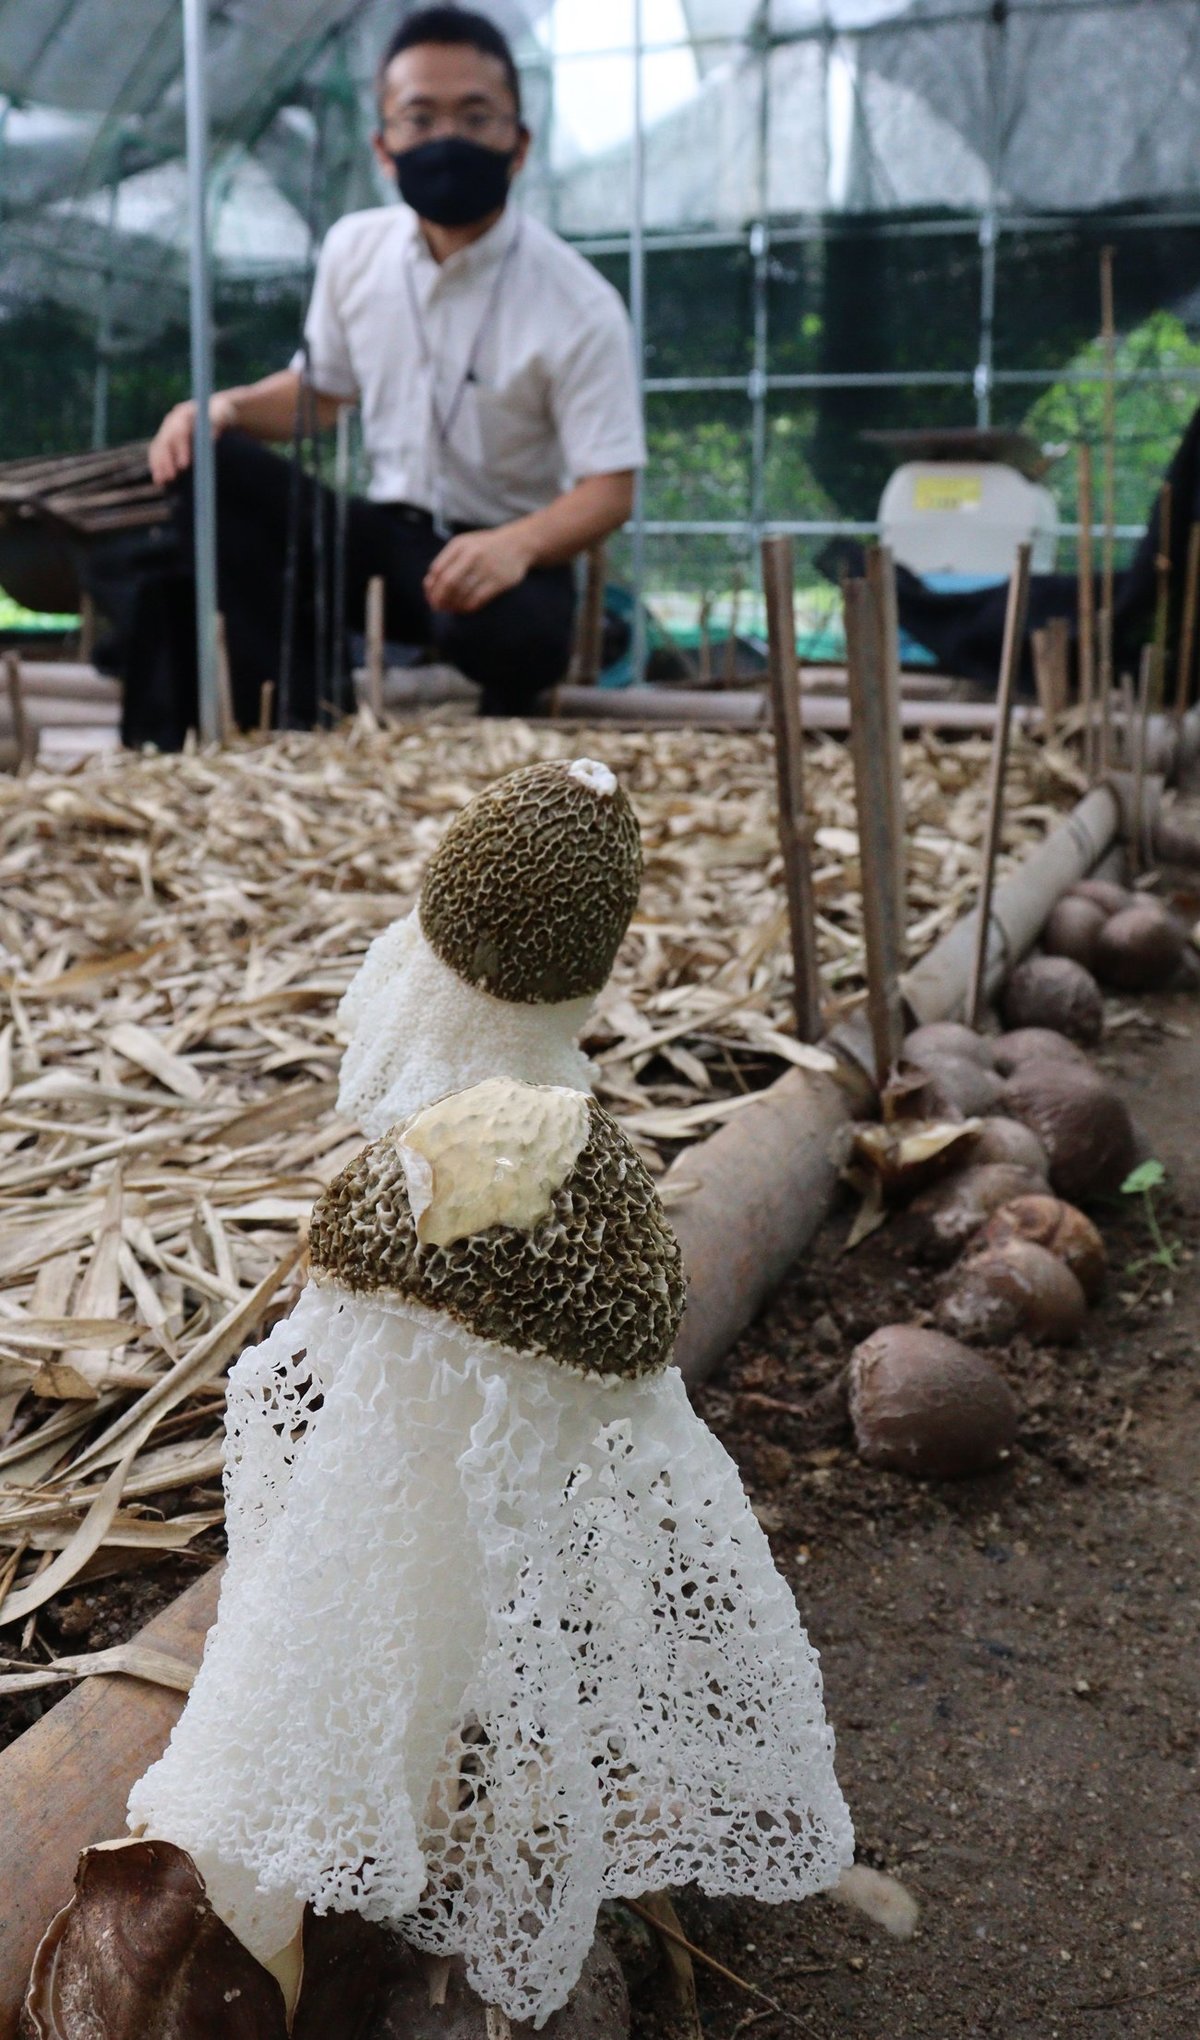 キノコの女王 キヌガサタケ 栽培実験着々 タケノコに次ぐ竹林の収入源に 社会 地域のニュース 京都新聞